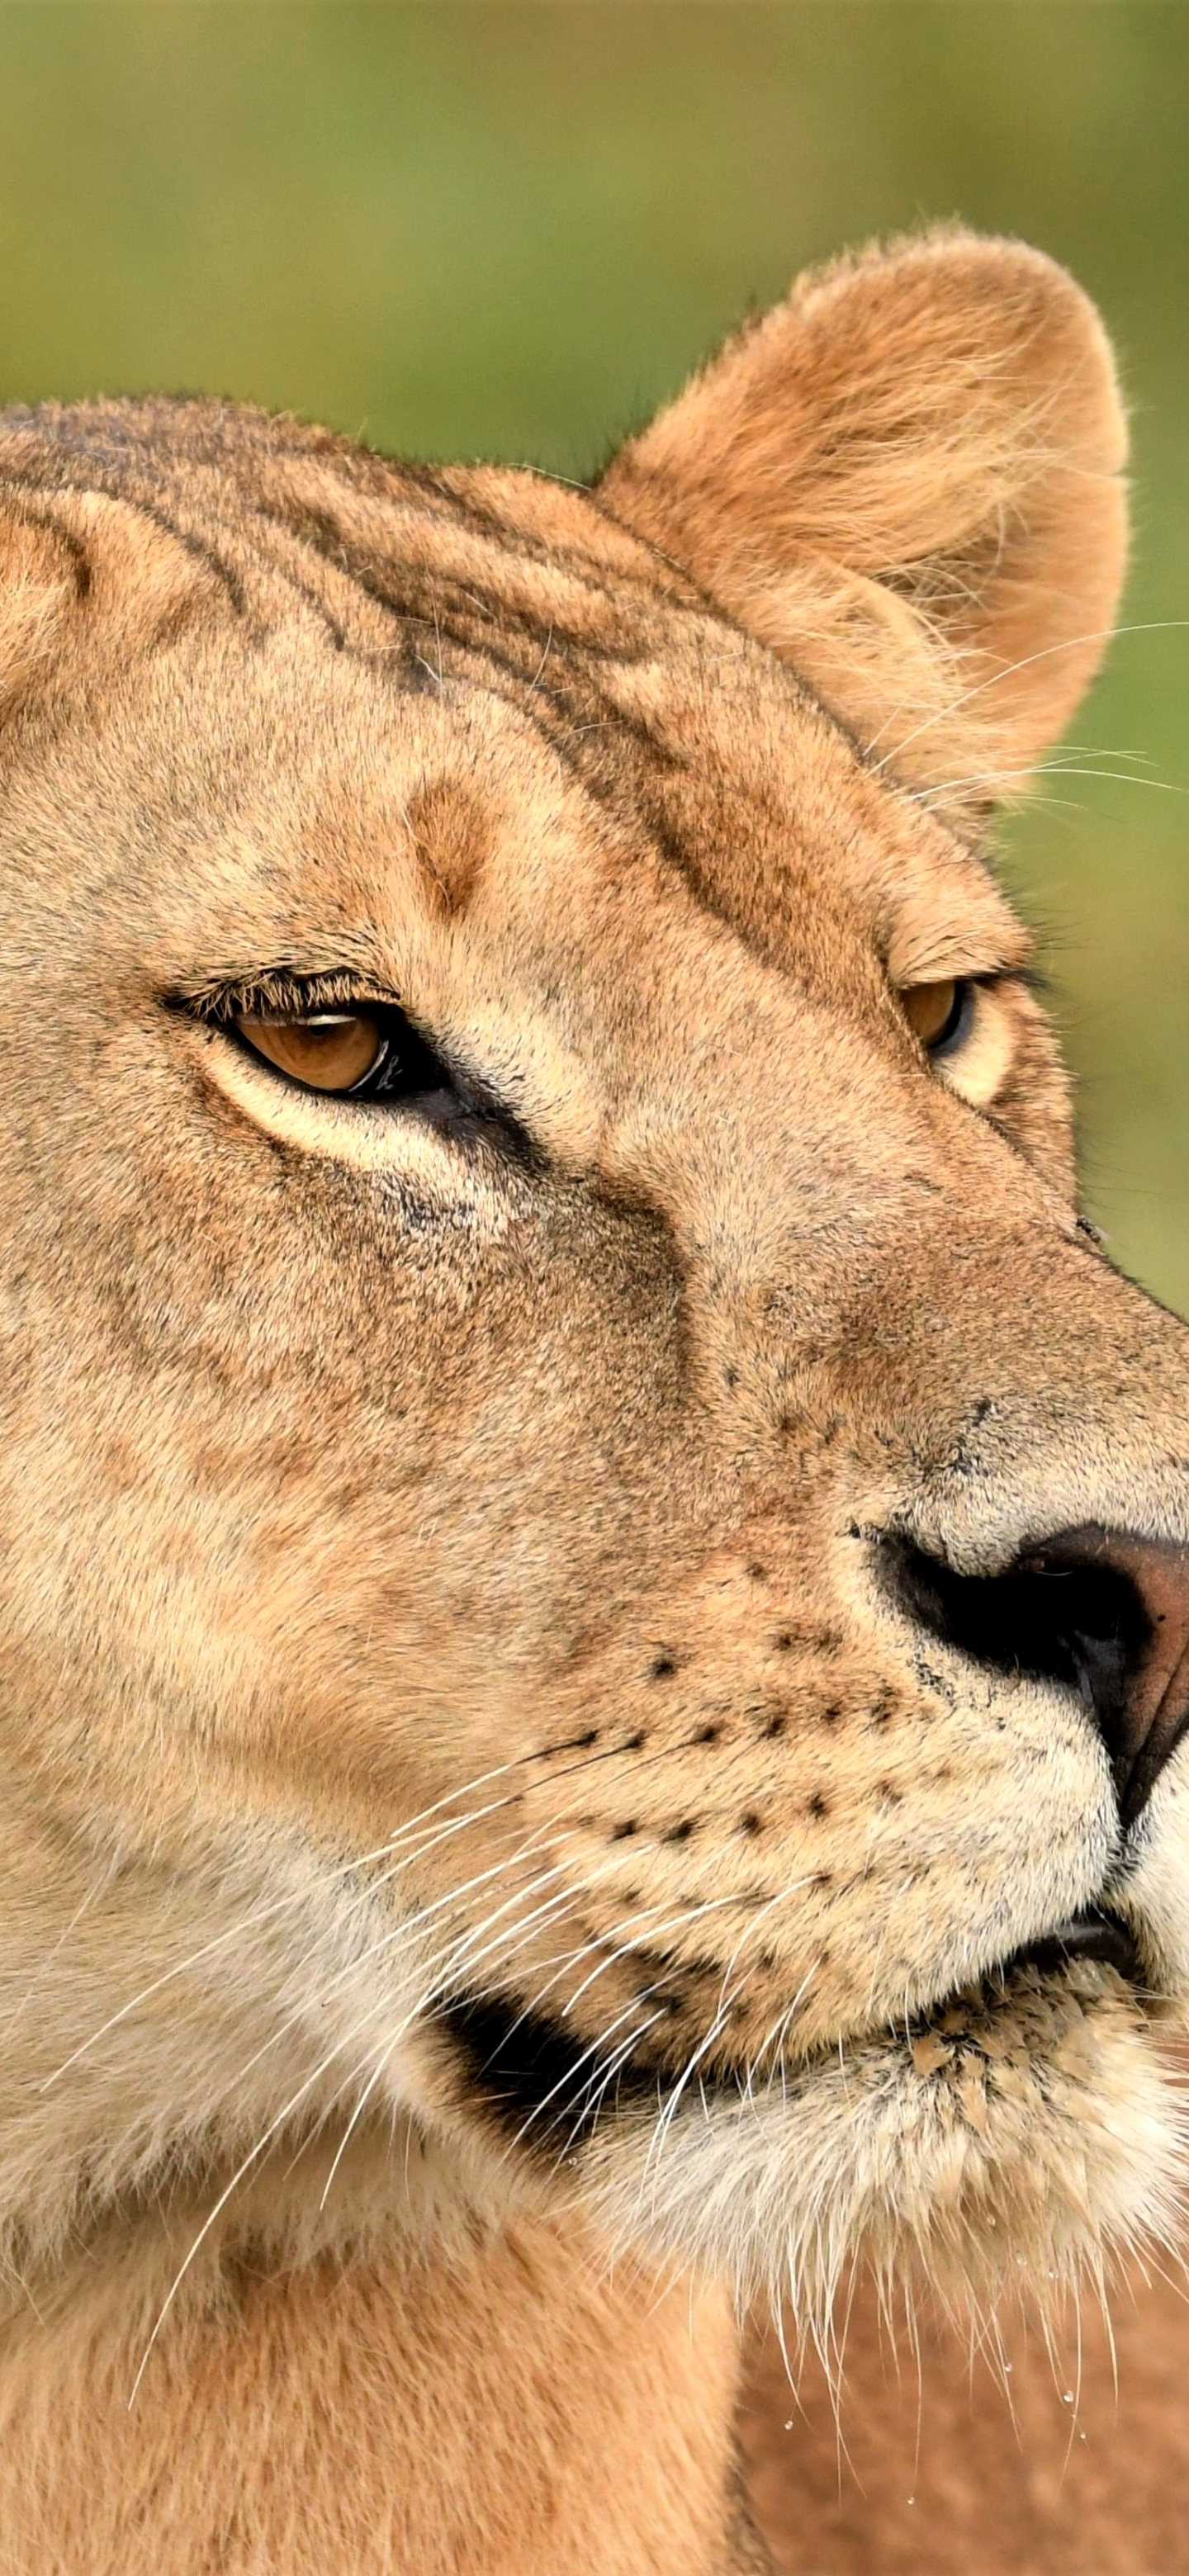 Descarga gratuita de fondo de pantalla para móvil de Animales, Gatos, León, África.